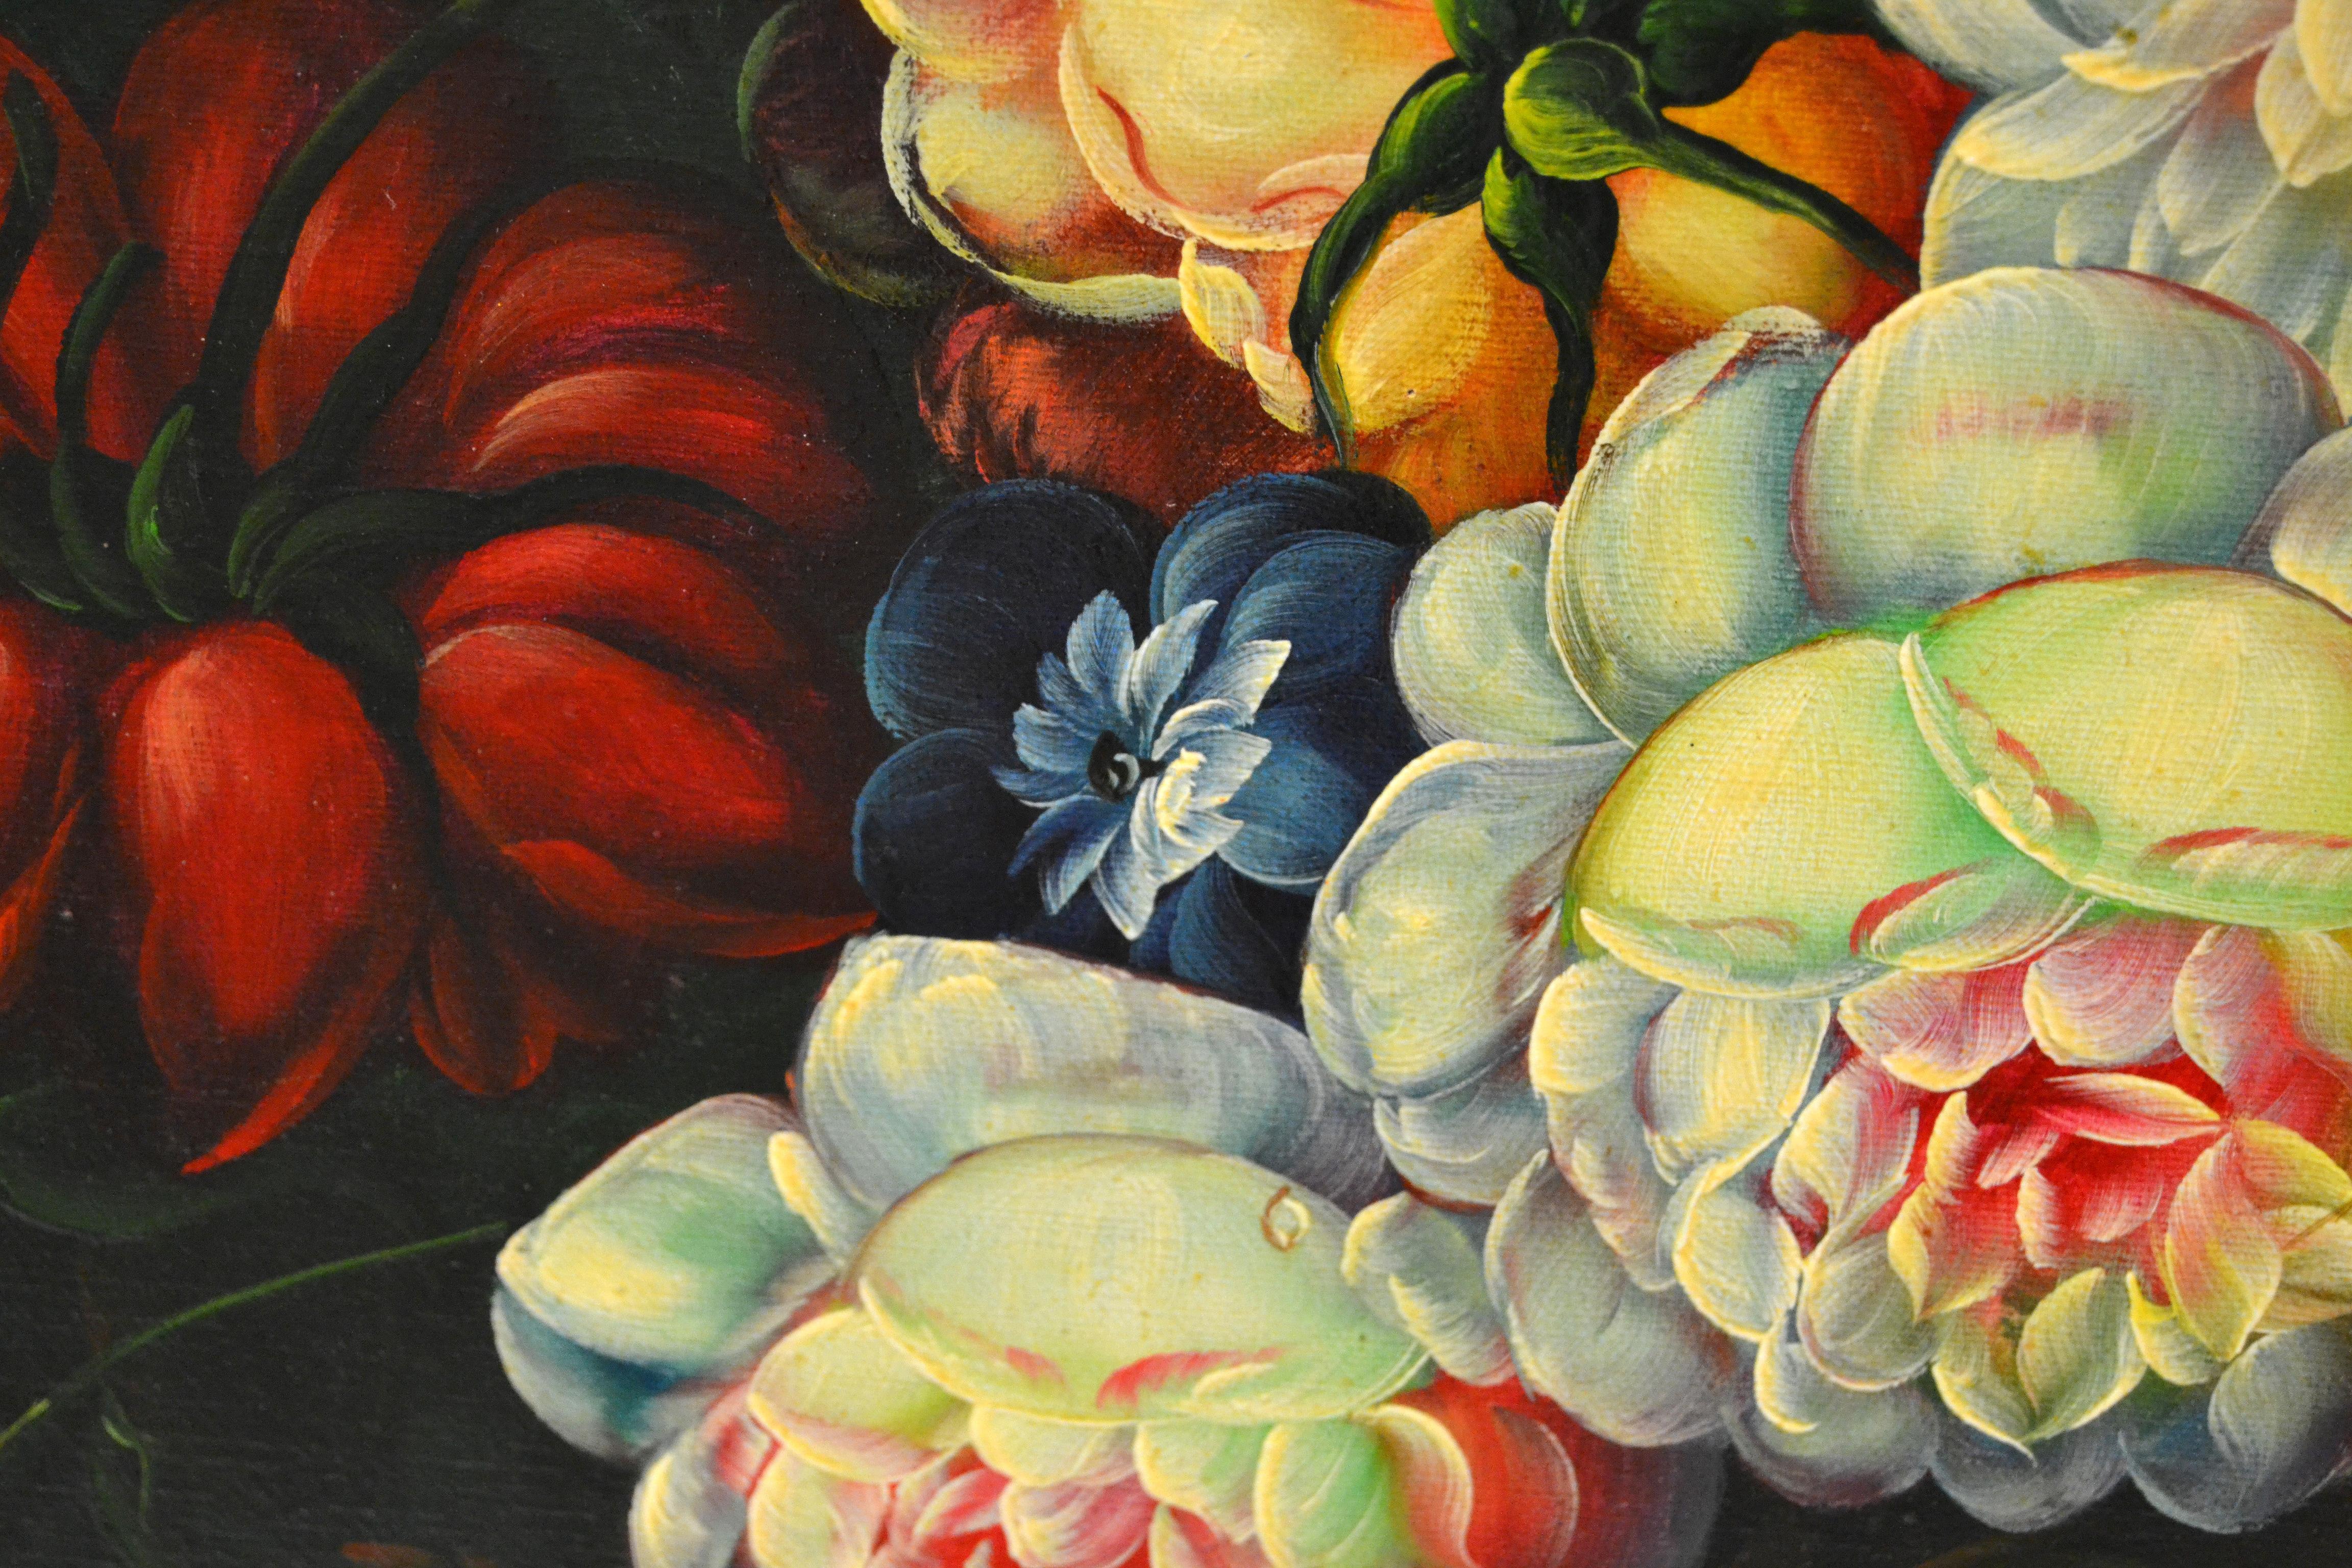 Modern Ornate Gilt Framed Oil Painting Floral Bouquet Still Life Signed James Moran For Sale